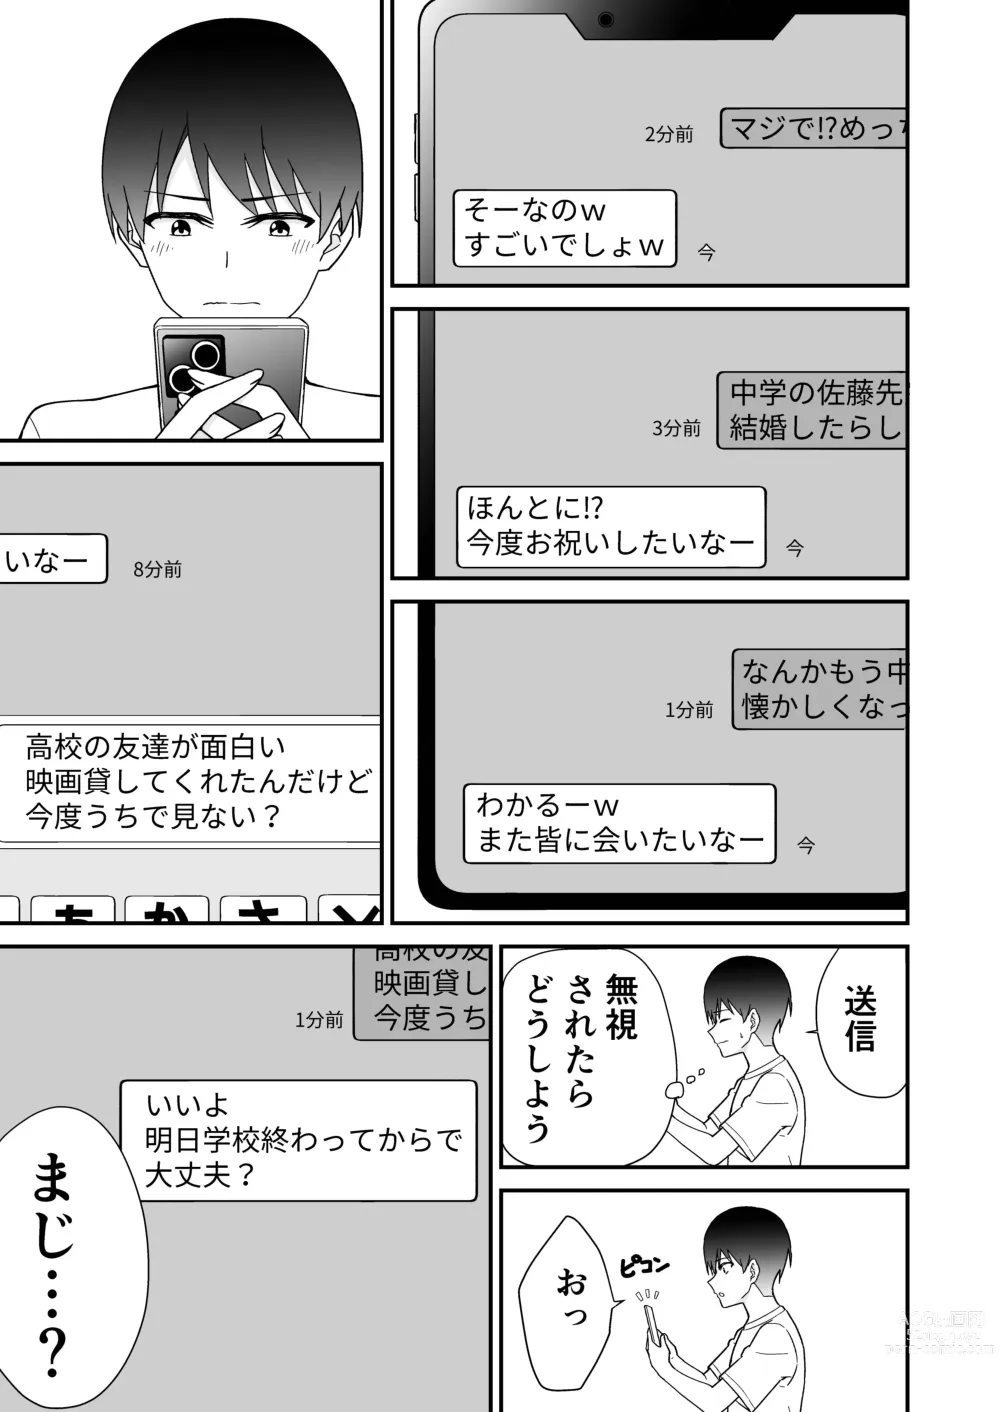 Page 11 of doujinshi Hajimete no Motokano